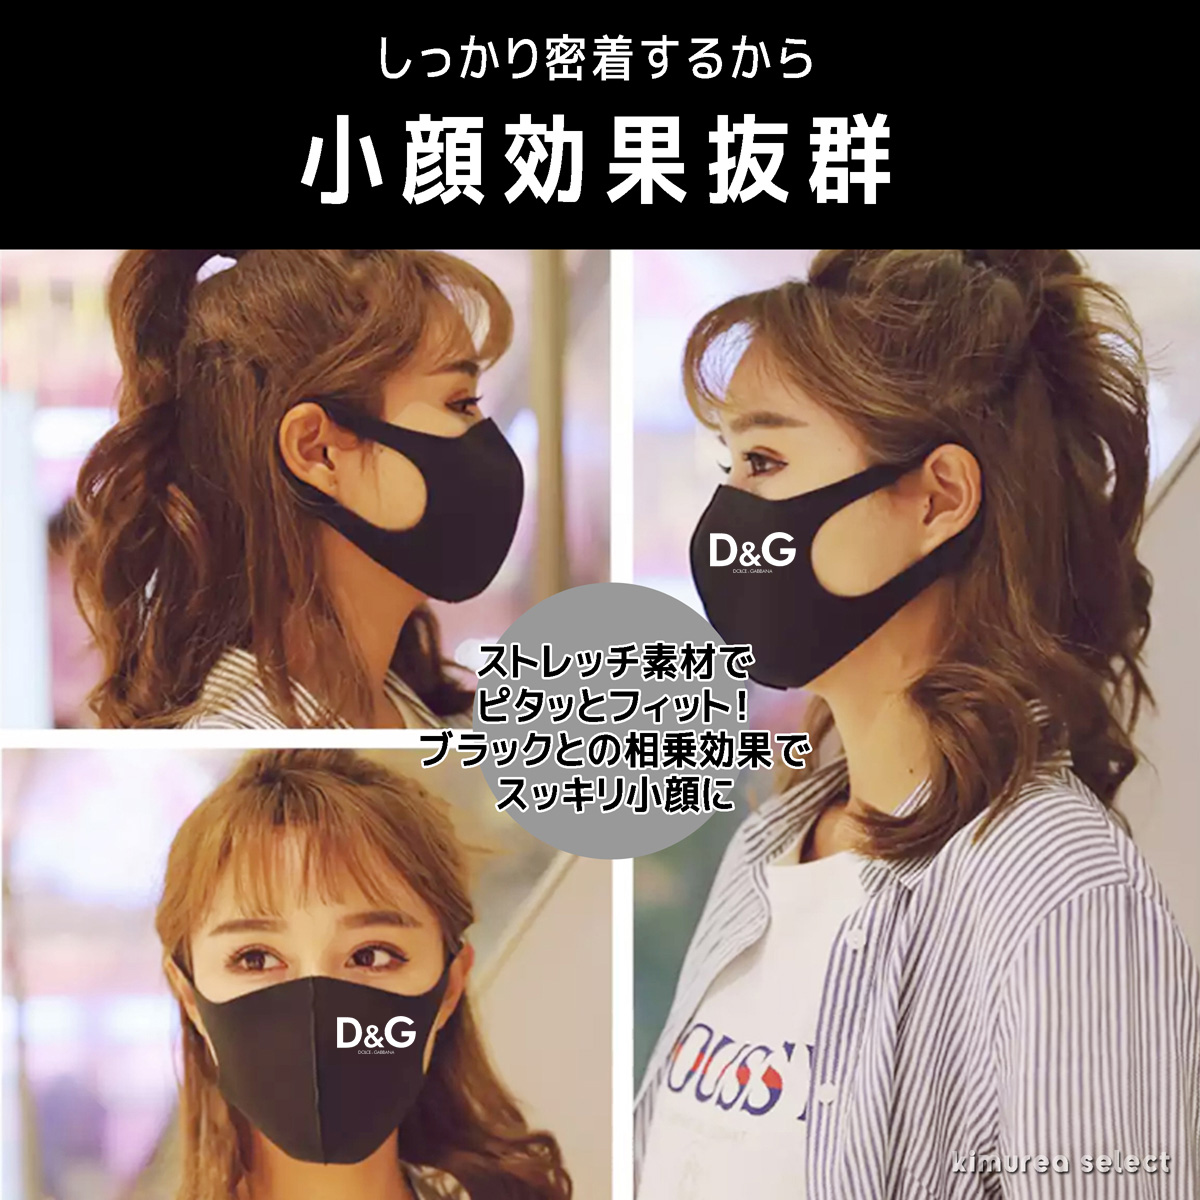 ハイブランドマスク 洗える3d立体マスク 